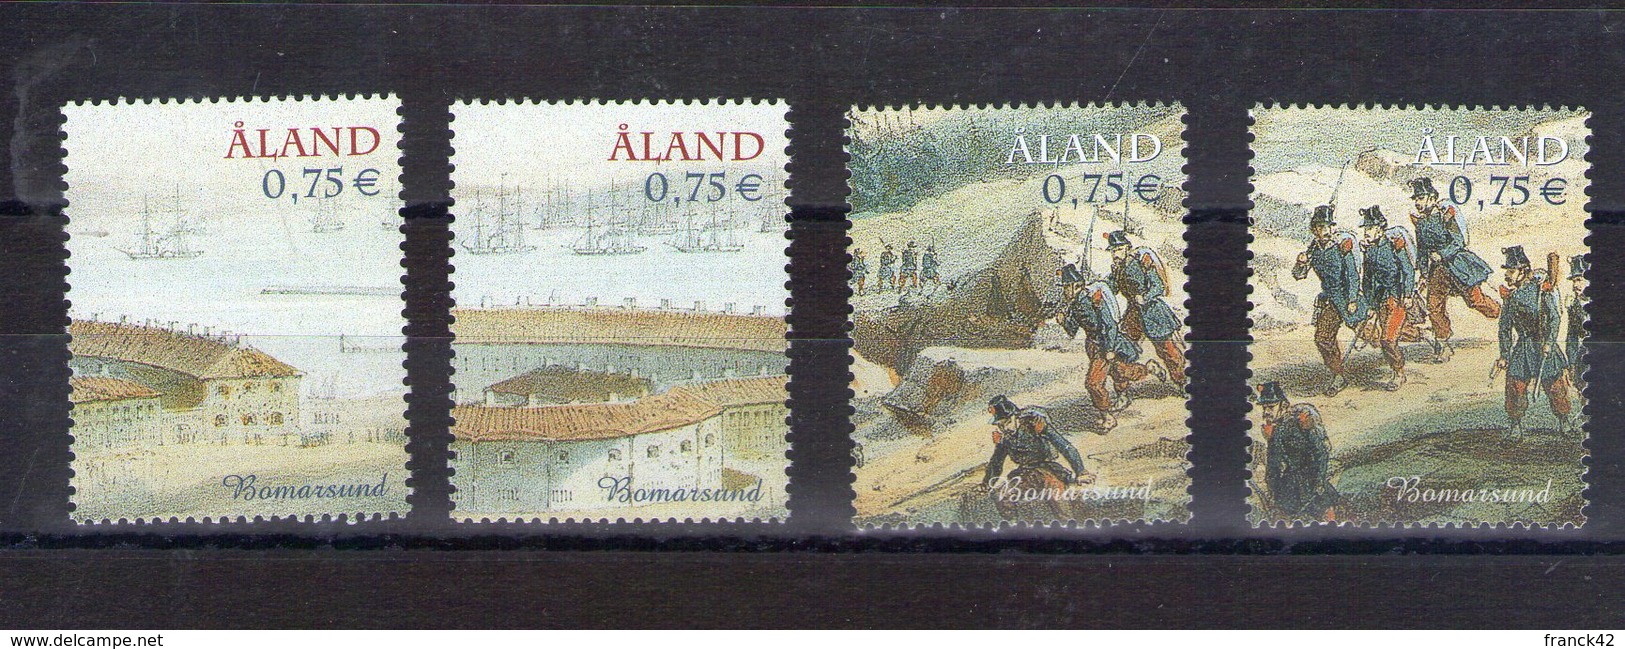 Aland. 150e Anniversaire De La Guerre De Crimée - Aland